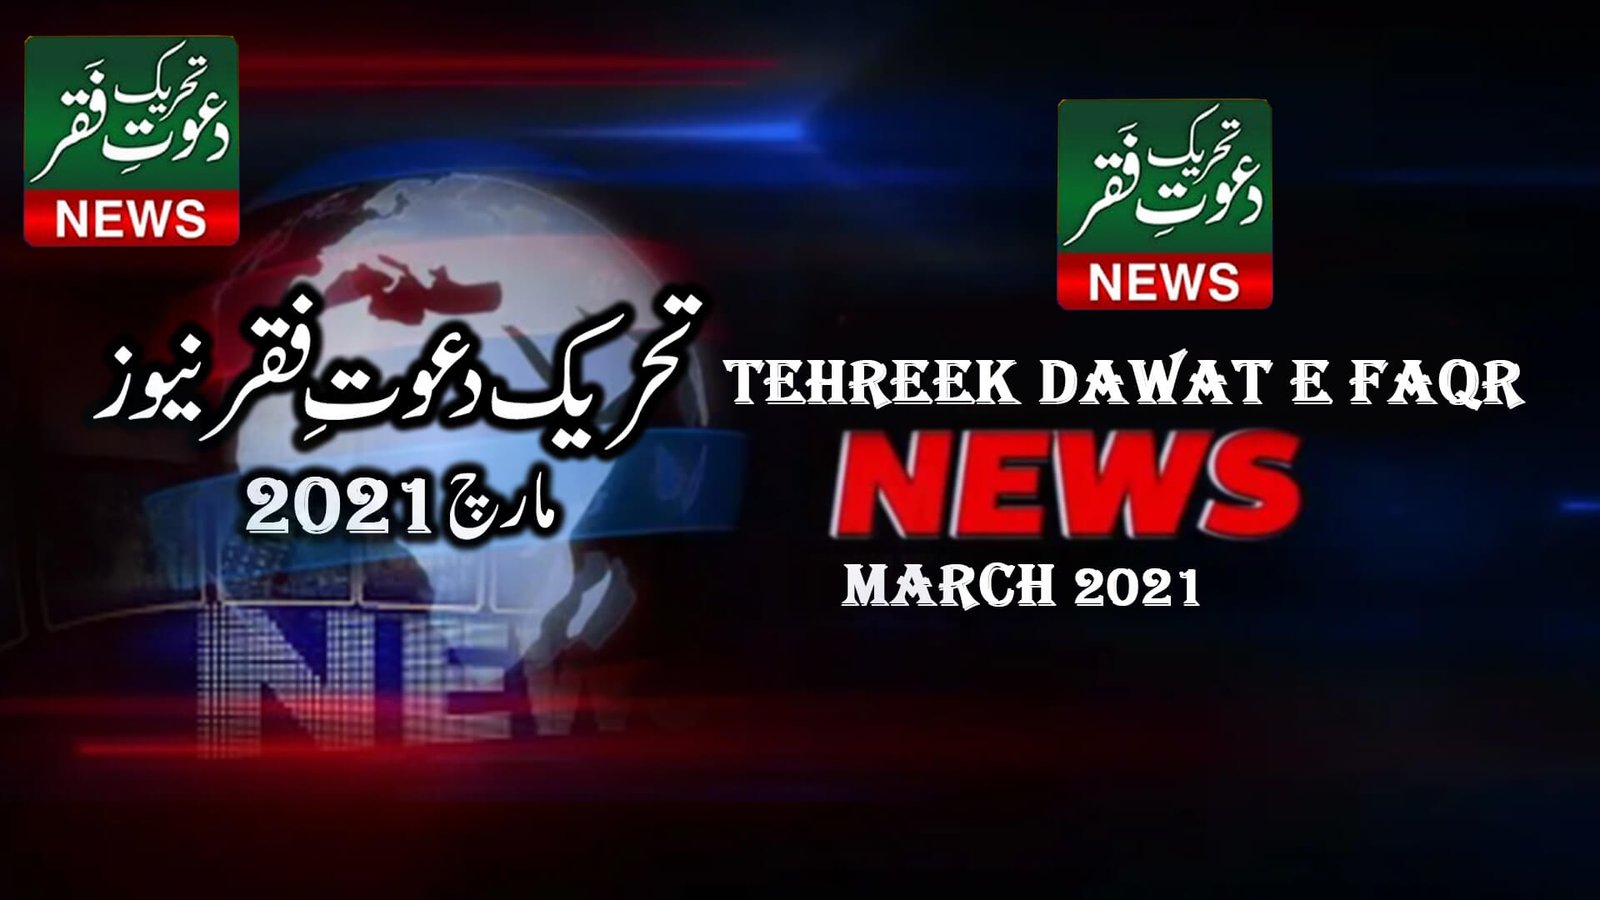 Tehreek Dawat e Faqr 21 March News